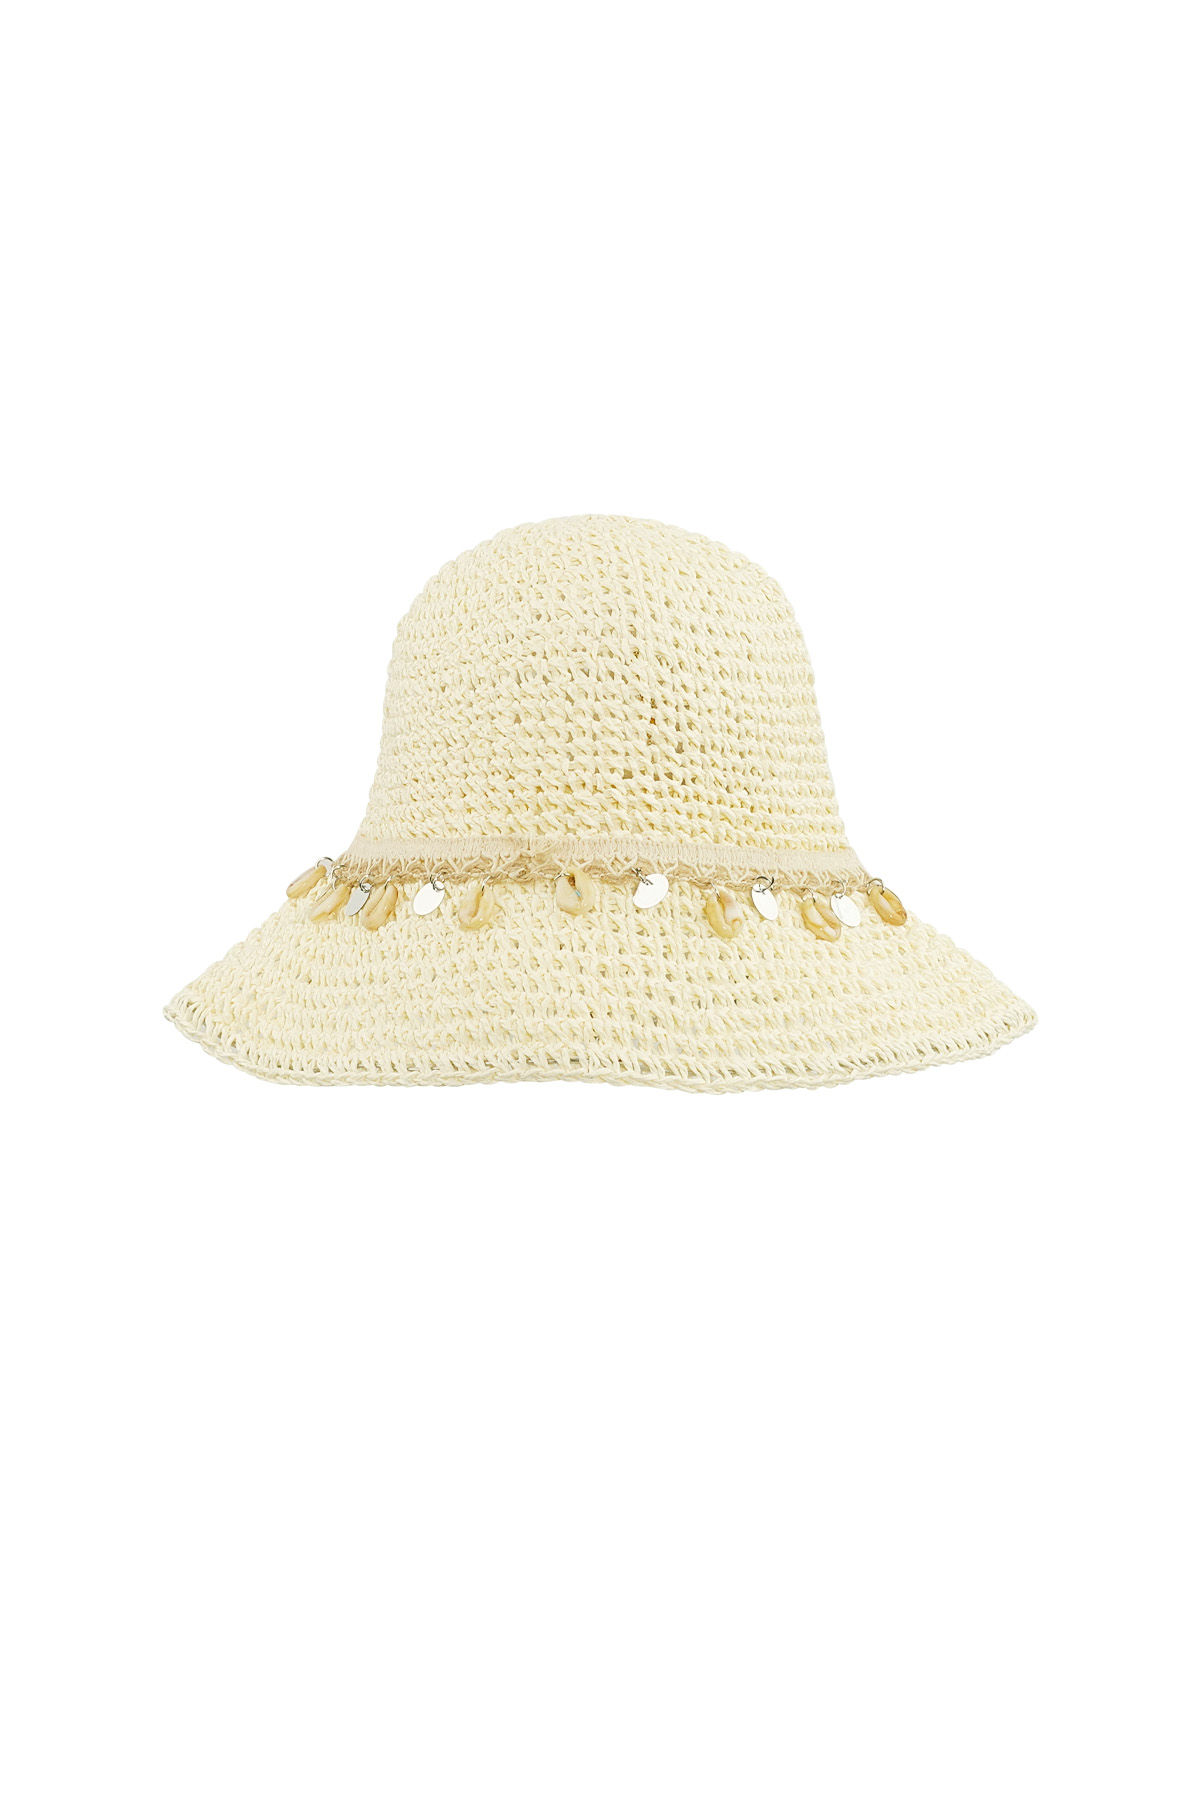 Cappello da spiaggia con conchiglie - bianco sporco h5 